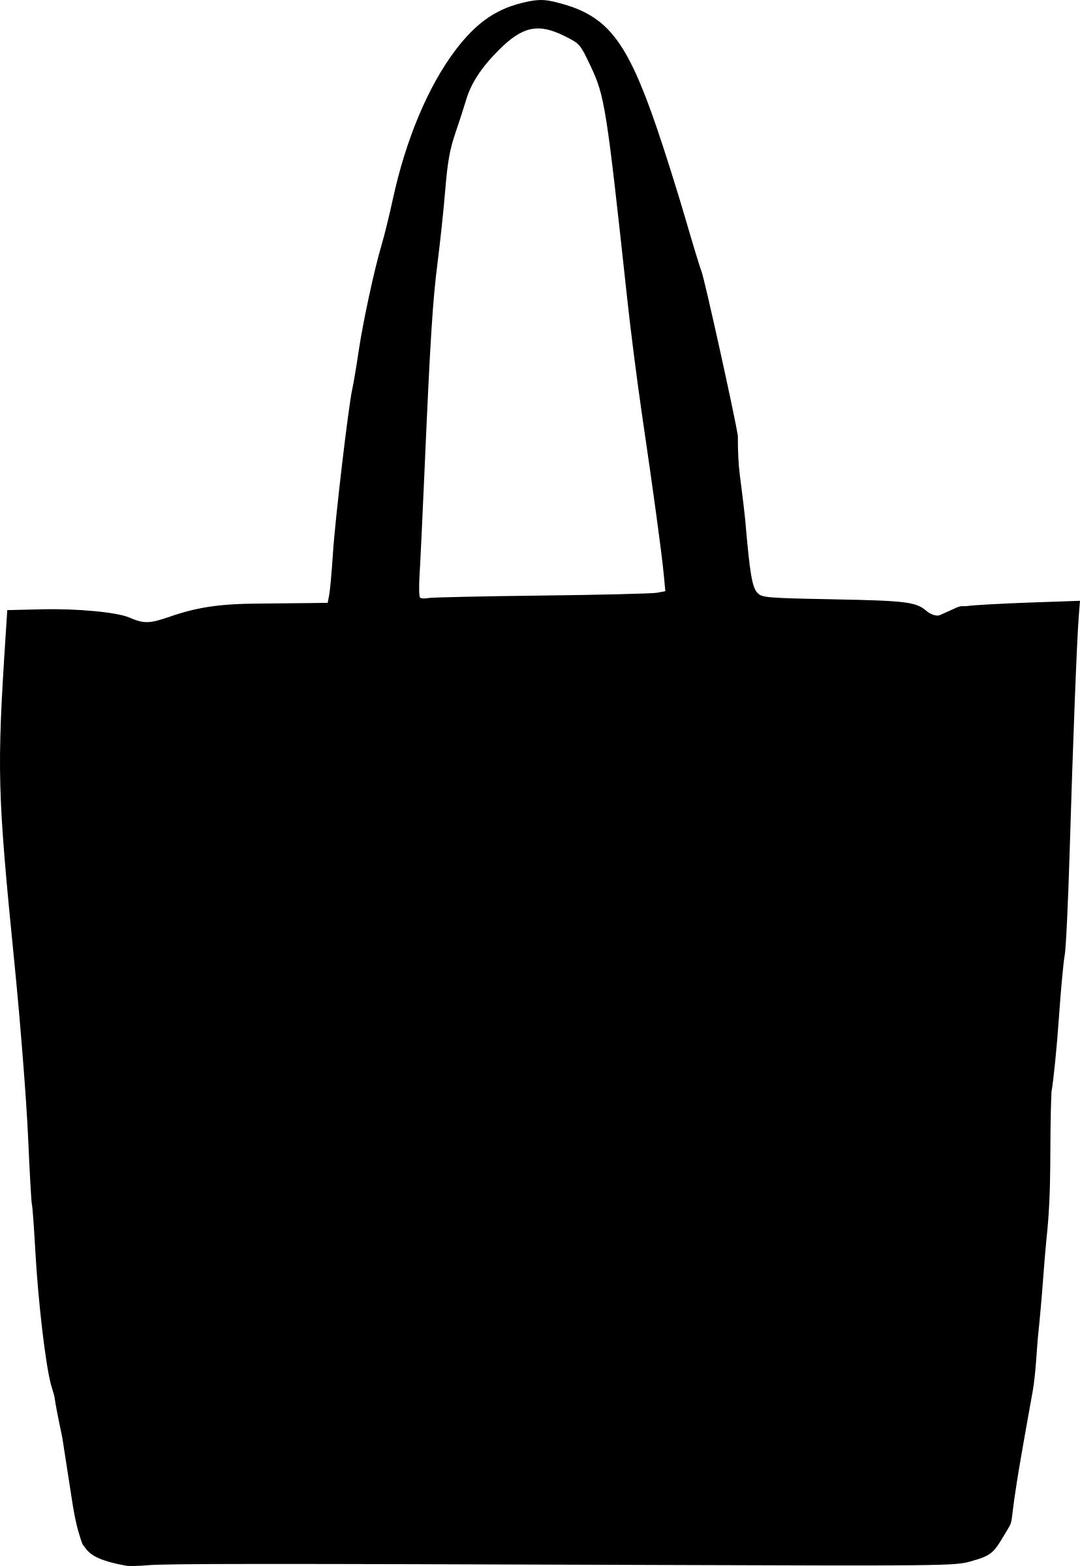 Ceso handbag silhouette 2 png transparent